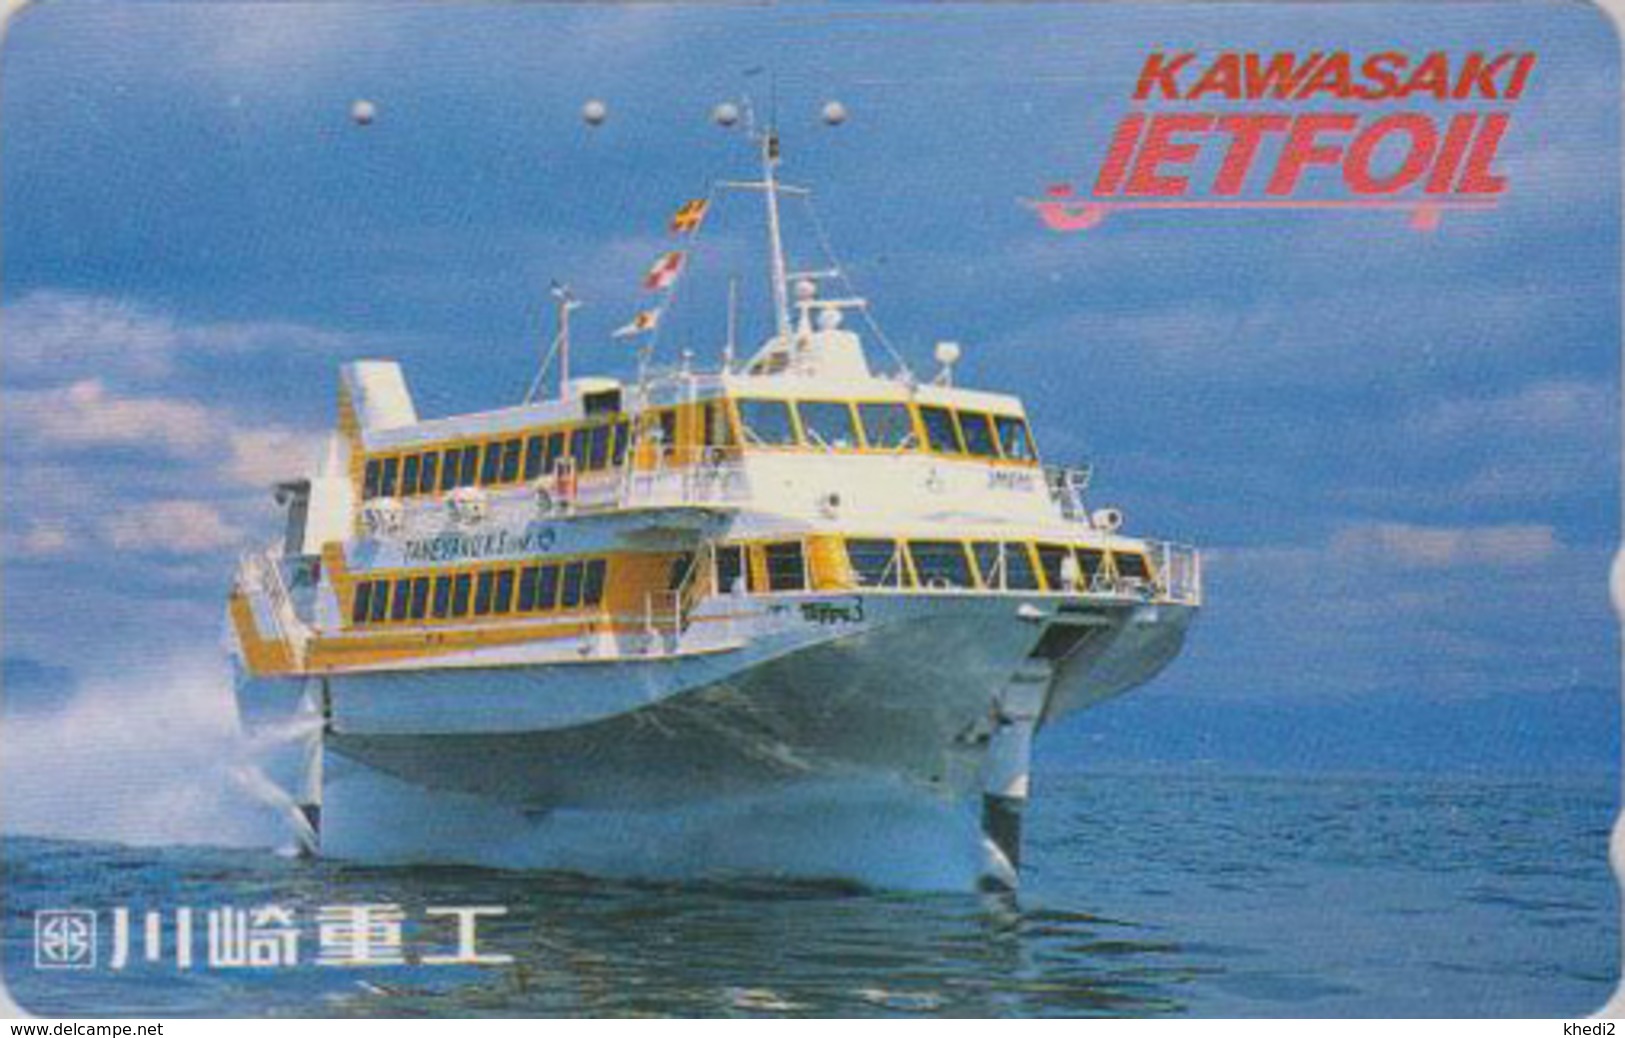 Télécarte Japon / 110-016 -  BATEAU HYDROPTERE KAWASAKI - JETFOIL JET FOIL - SHIP Japan Phonecard - SCHIFF - 673 - Bateaux